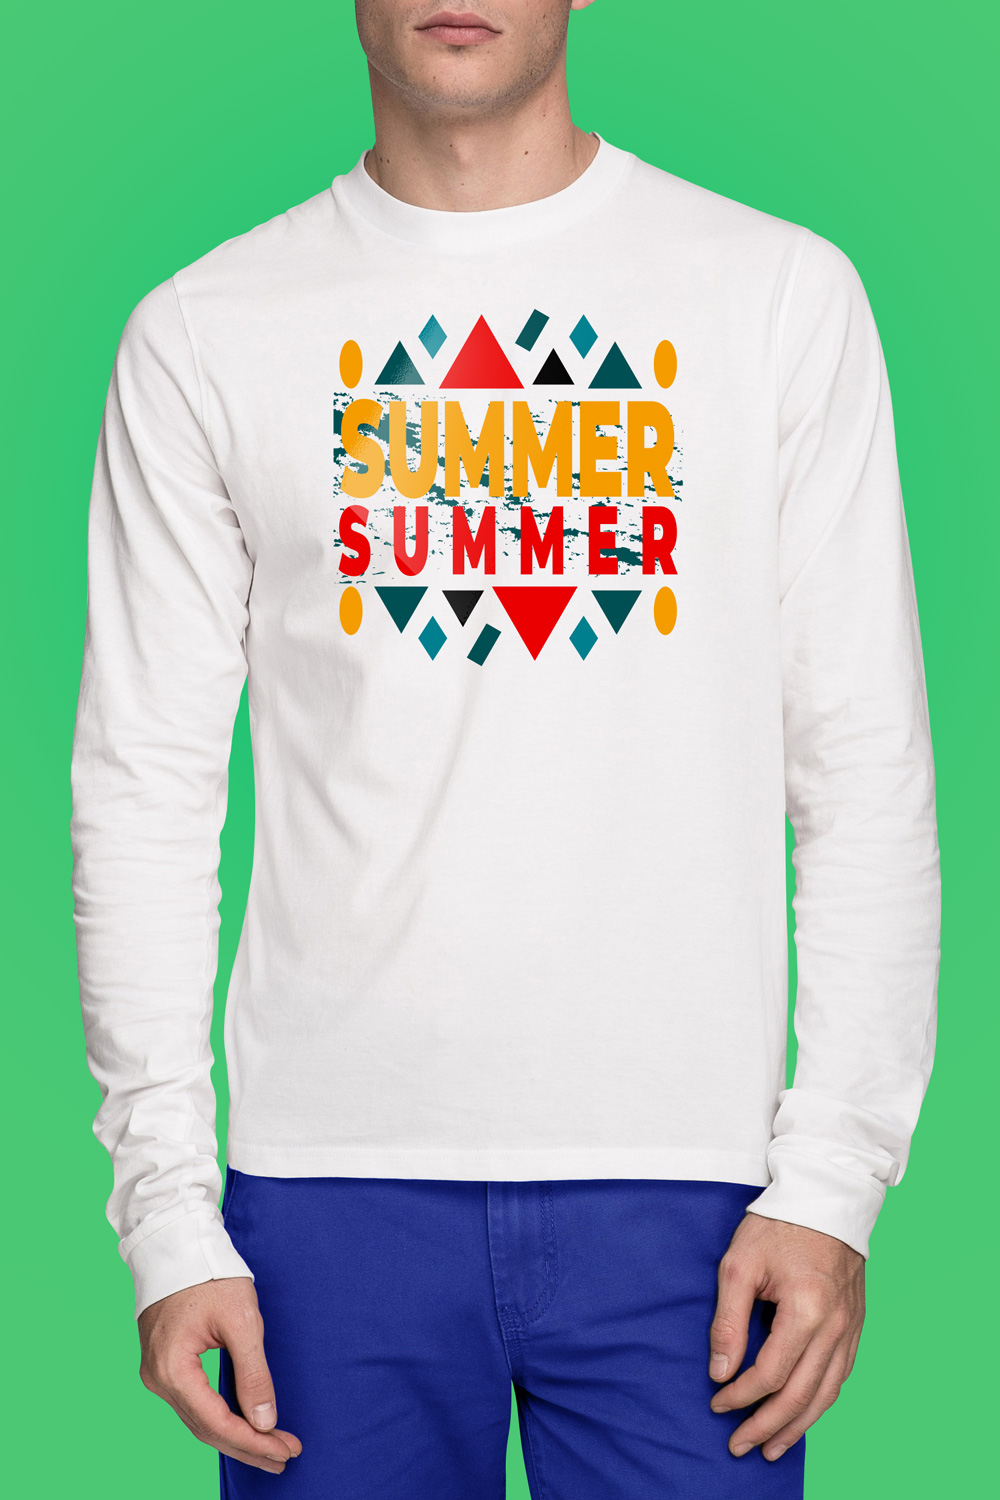 Summer t-shirt design pinterest preview image.